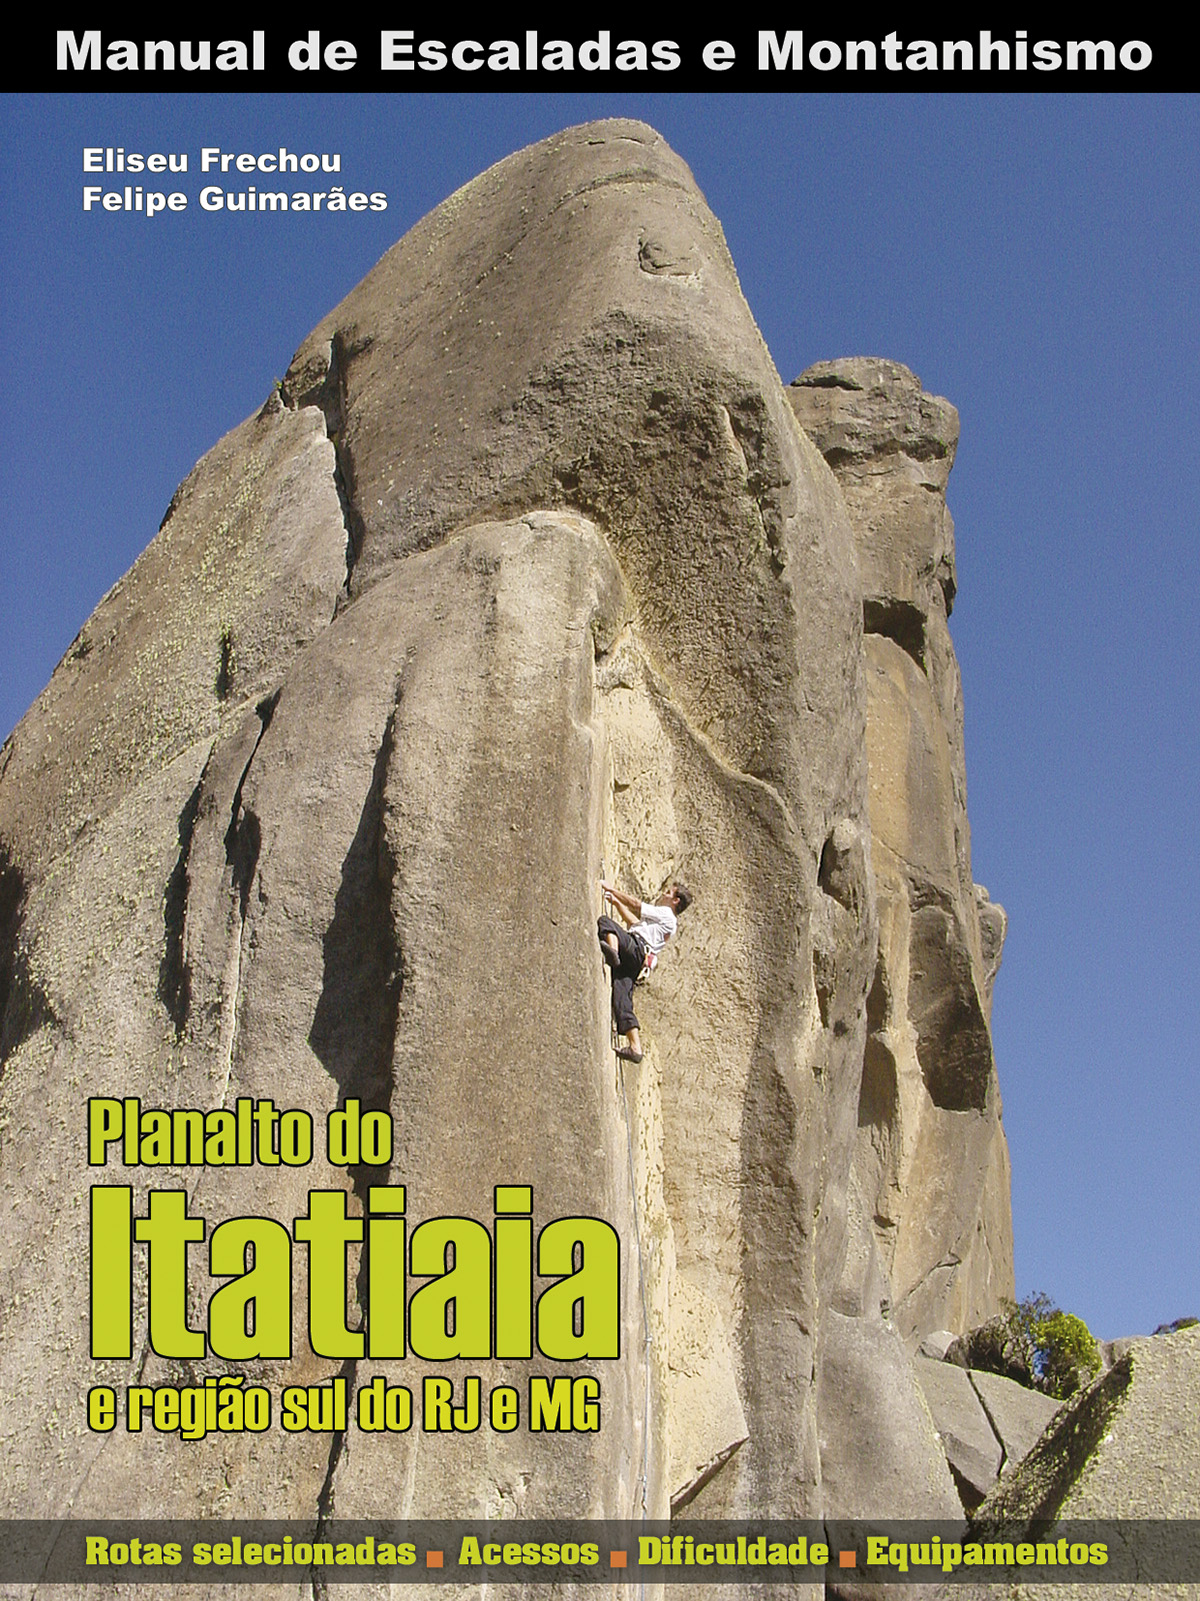 Primeira edição do Manuel de Escaladas do Planalto do Itatiaia e Região Sul do RJ e MG, publicado em 2007.